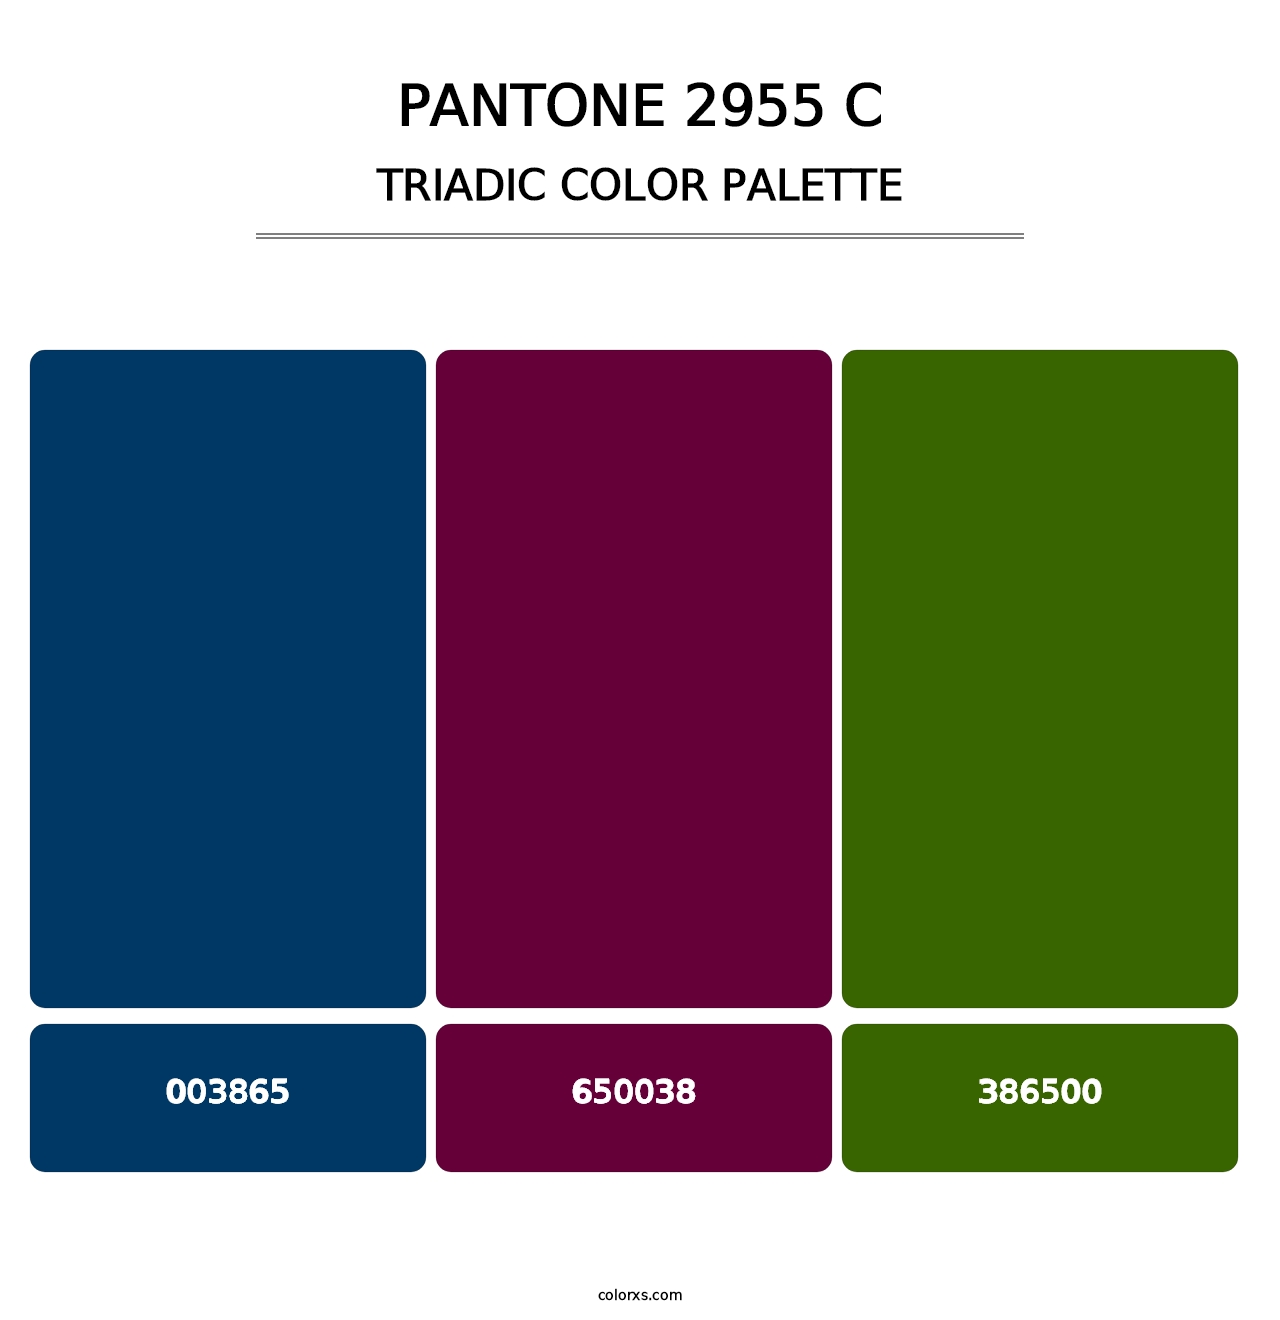 PANTONE 2955 C - Triadic Color Palette